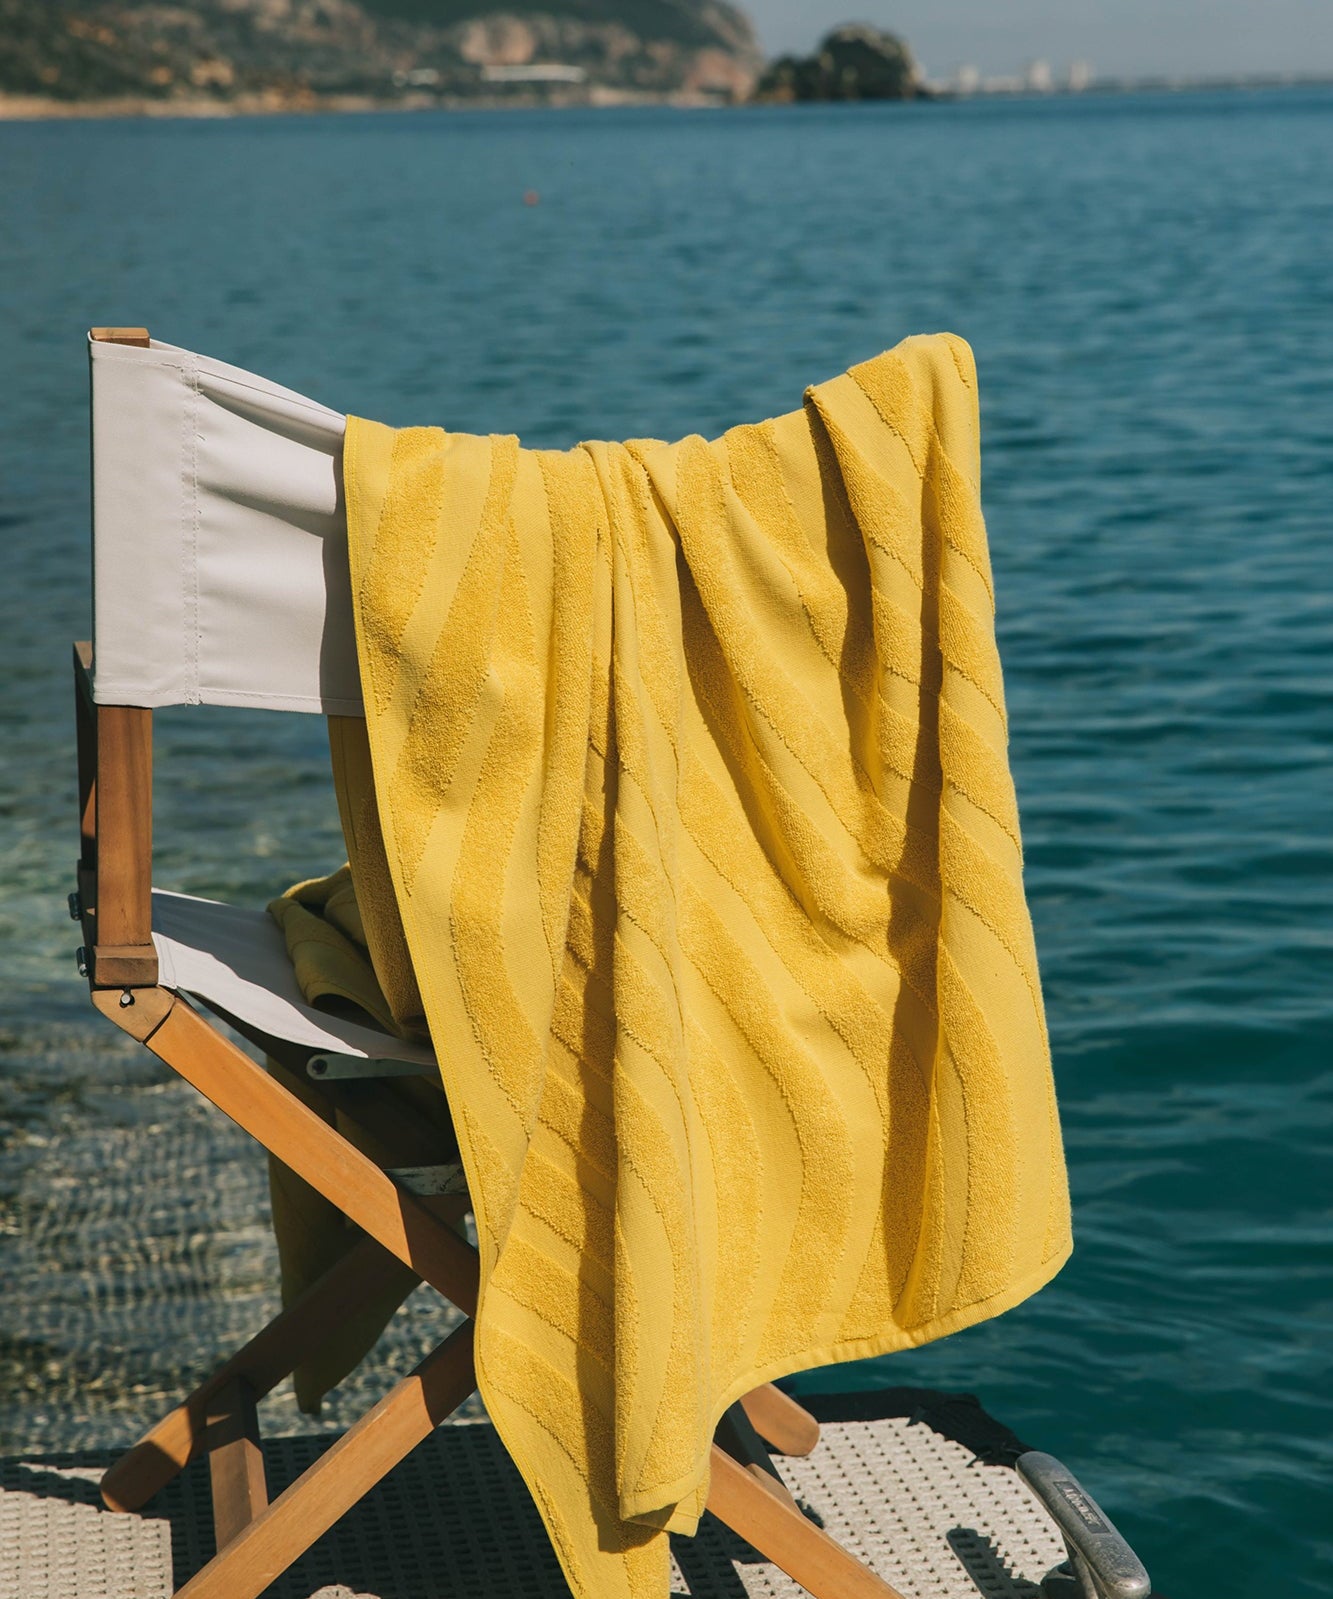 Mar ondulado beach towel - Torres Novas